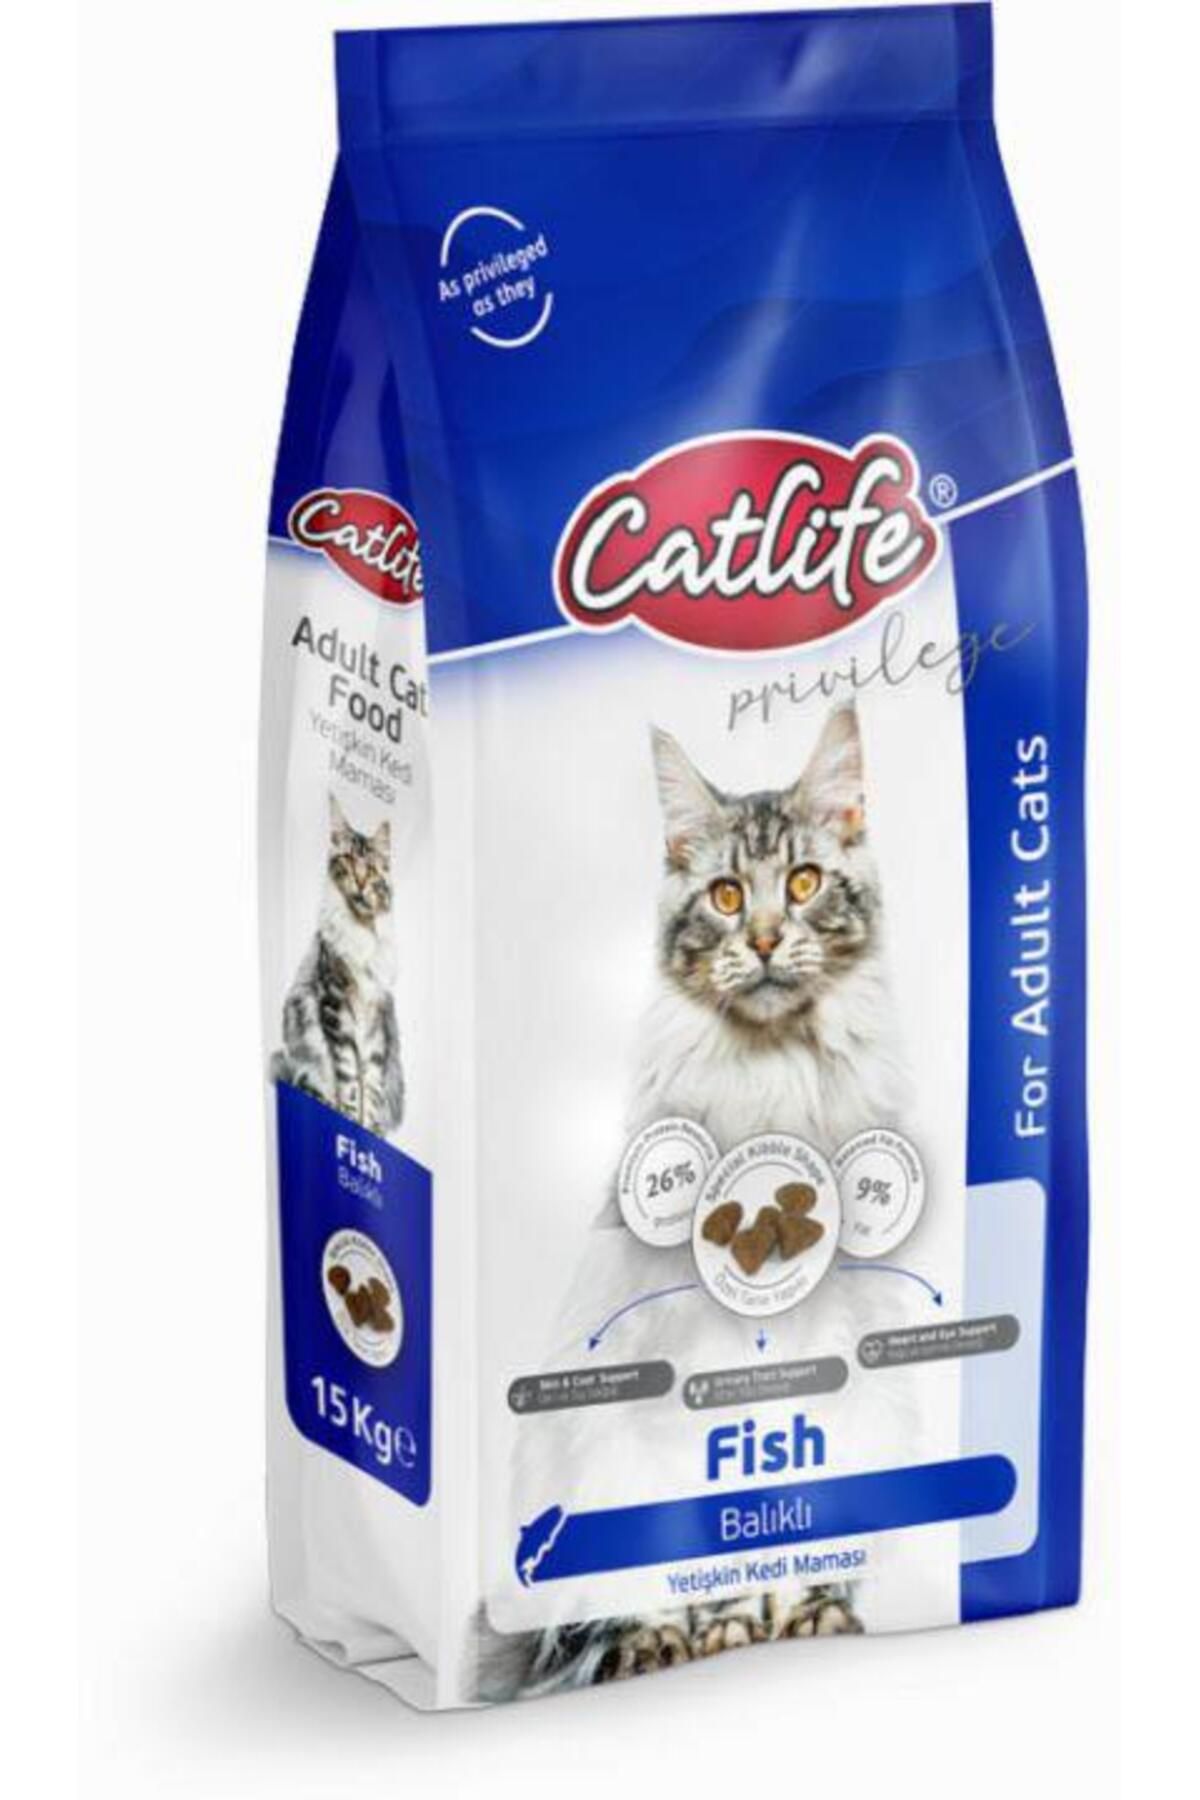 Catlife Balıklı Yetişkin Kedi Maması 15kg